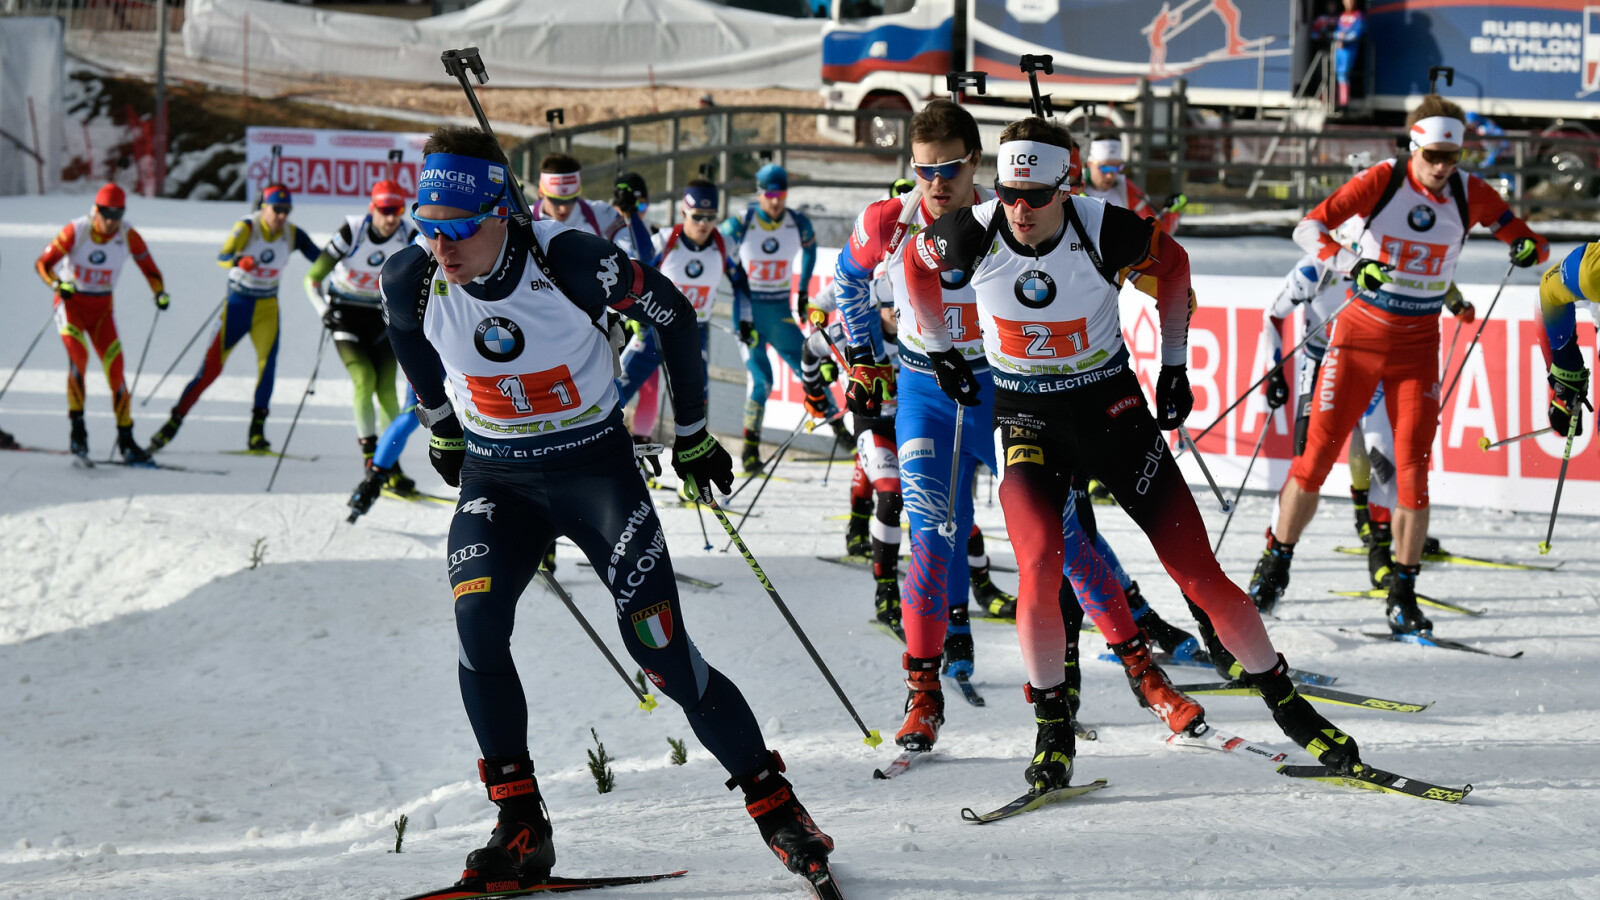 Biathlon-Weltcup im Live-Stream und TV verfolgen So seht ihr die Wettkämpfe gratis NETZWELT